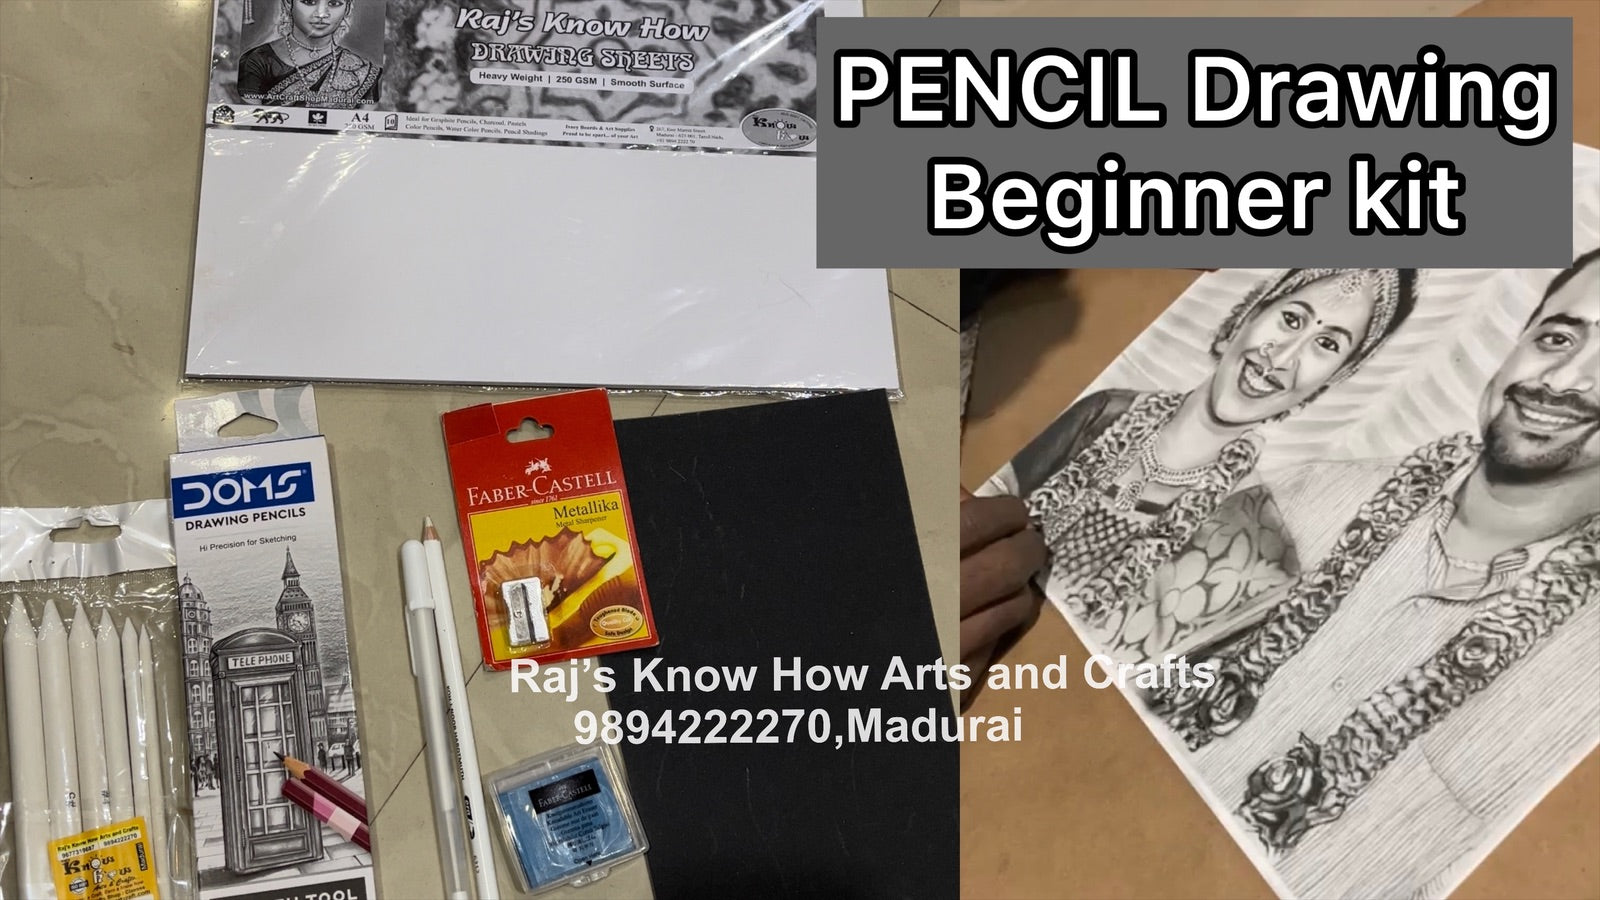 Pencil Shading Beginner kit